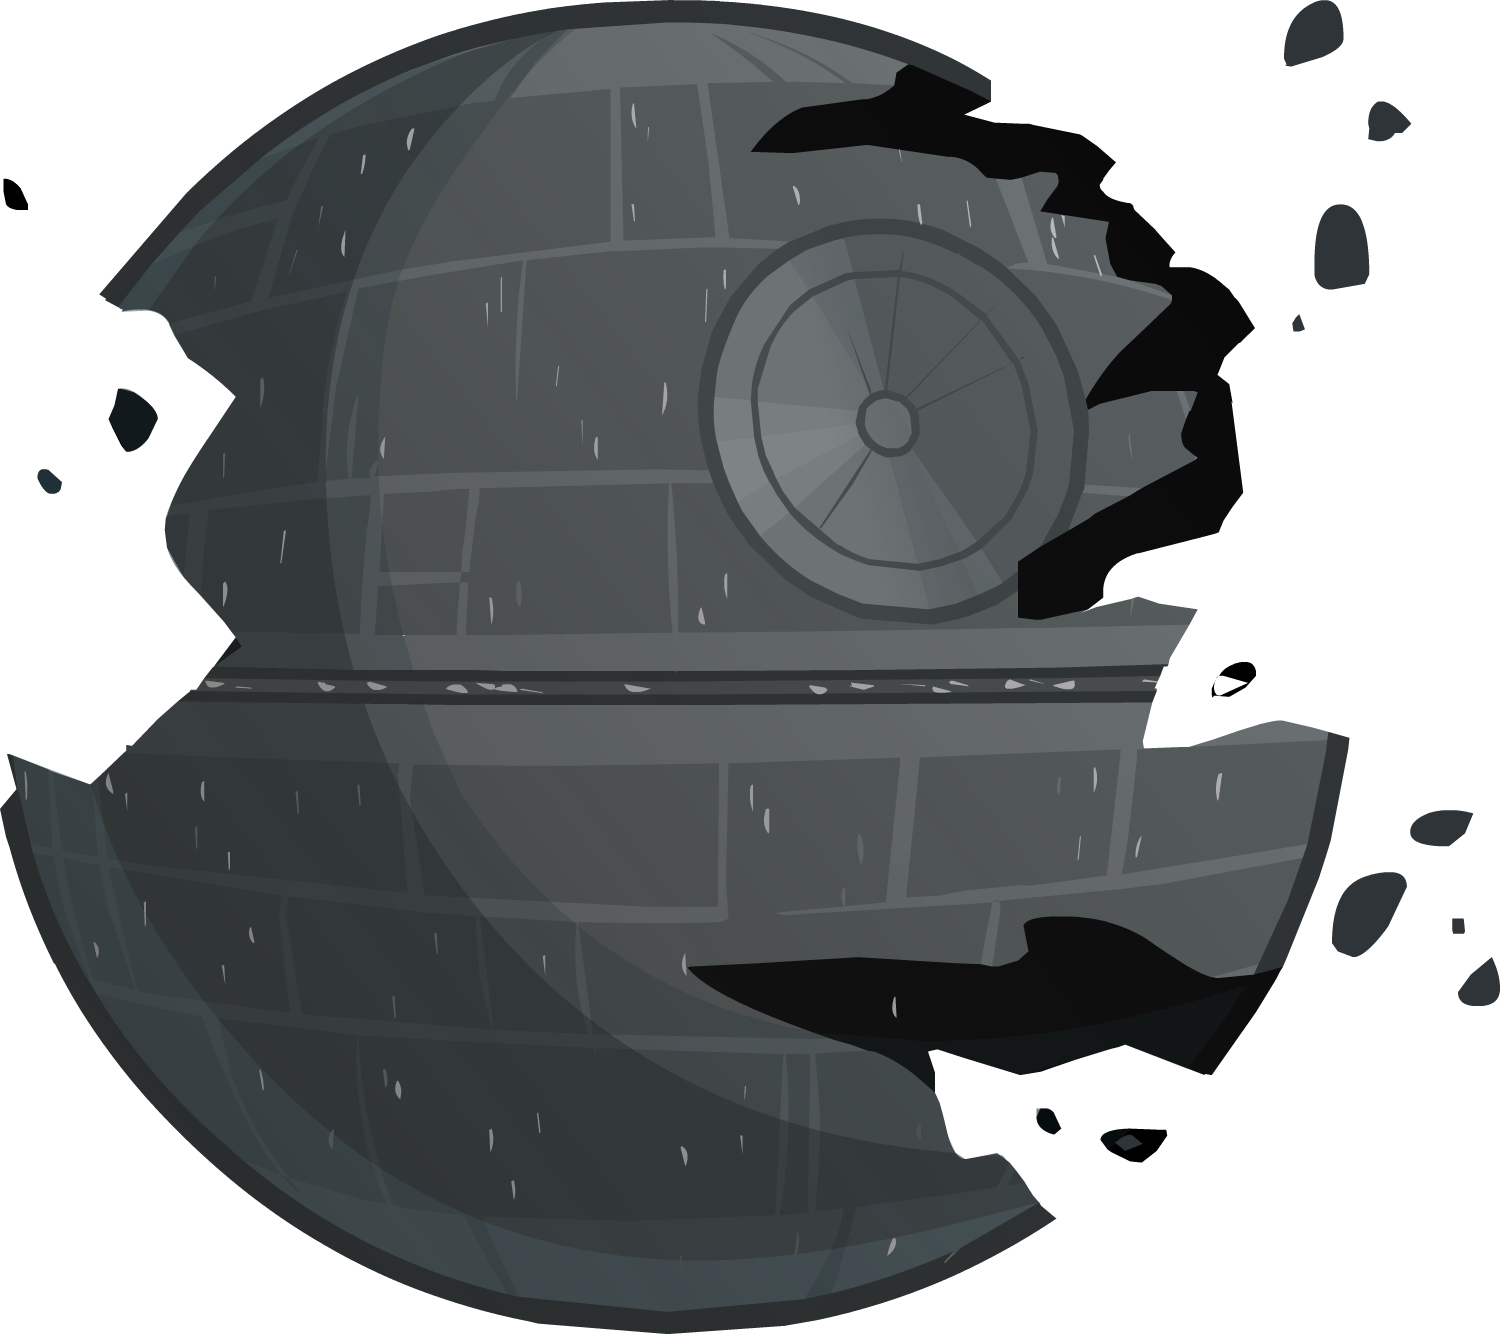 Destroyed Death Star Illustration PNG